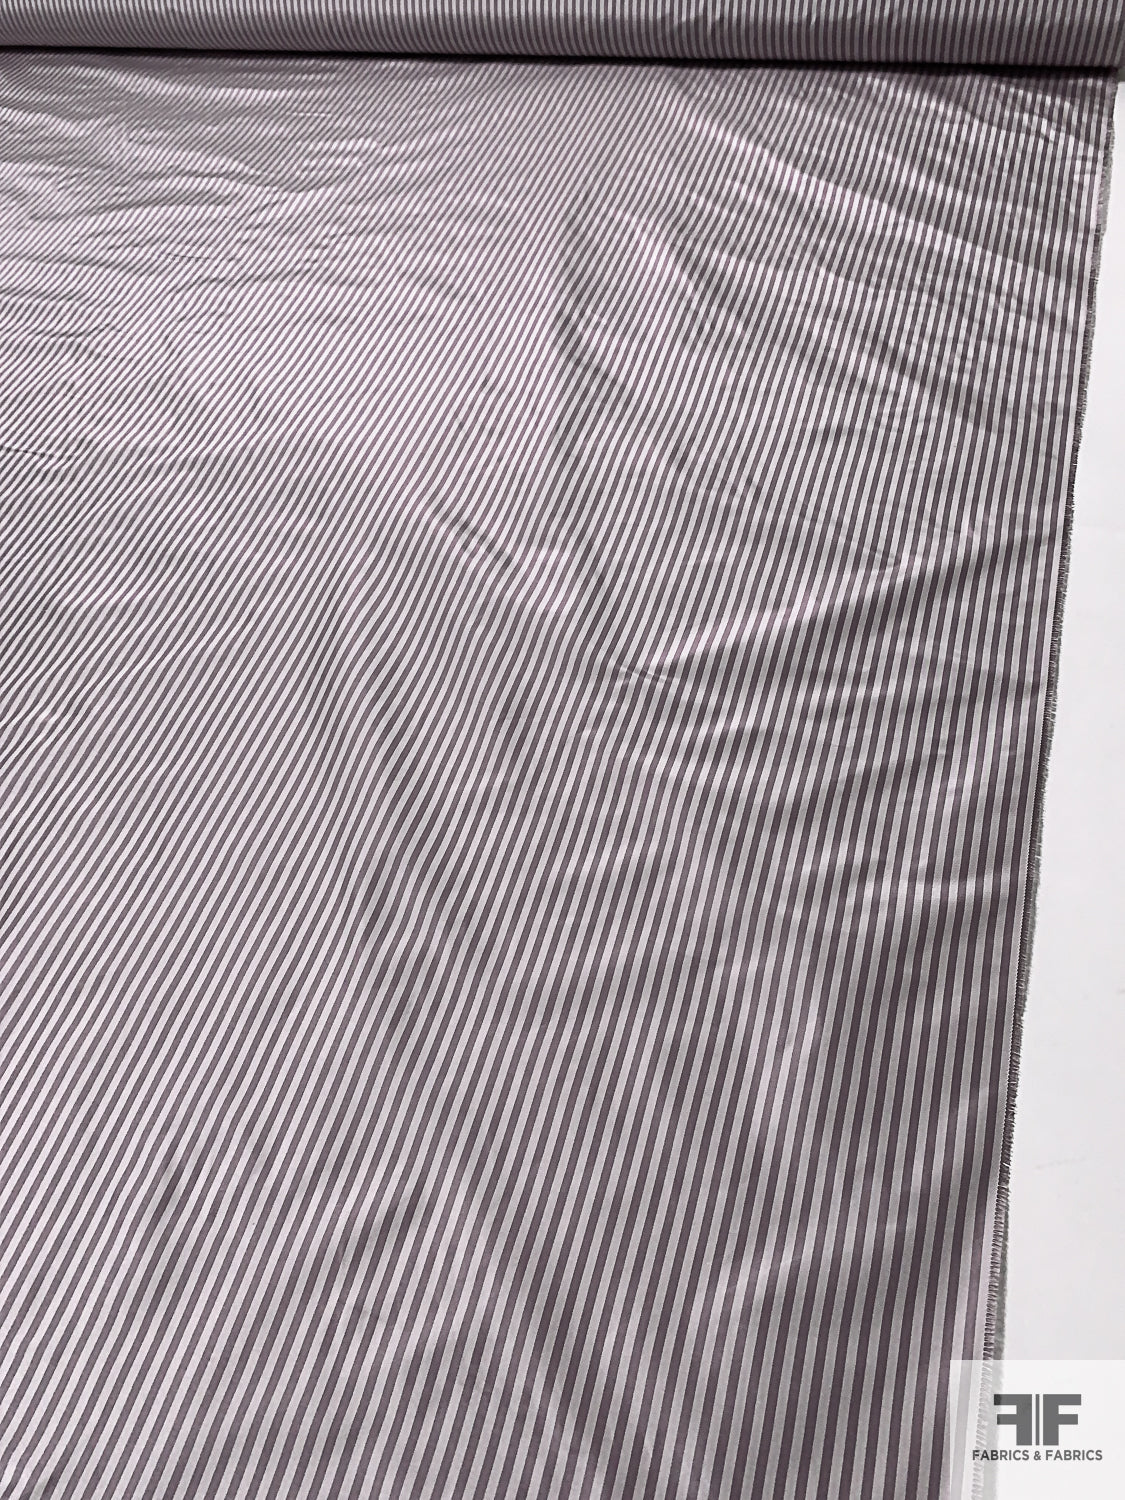 Vertical Striped Yarn-Dyed Silk Taffeta - Dusty Lavender / Dusty Off-White